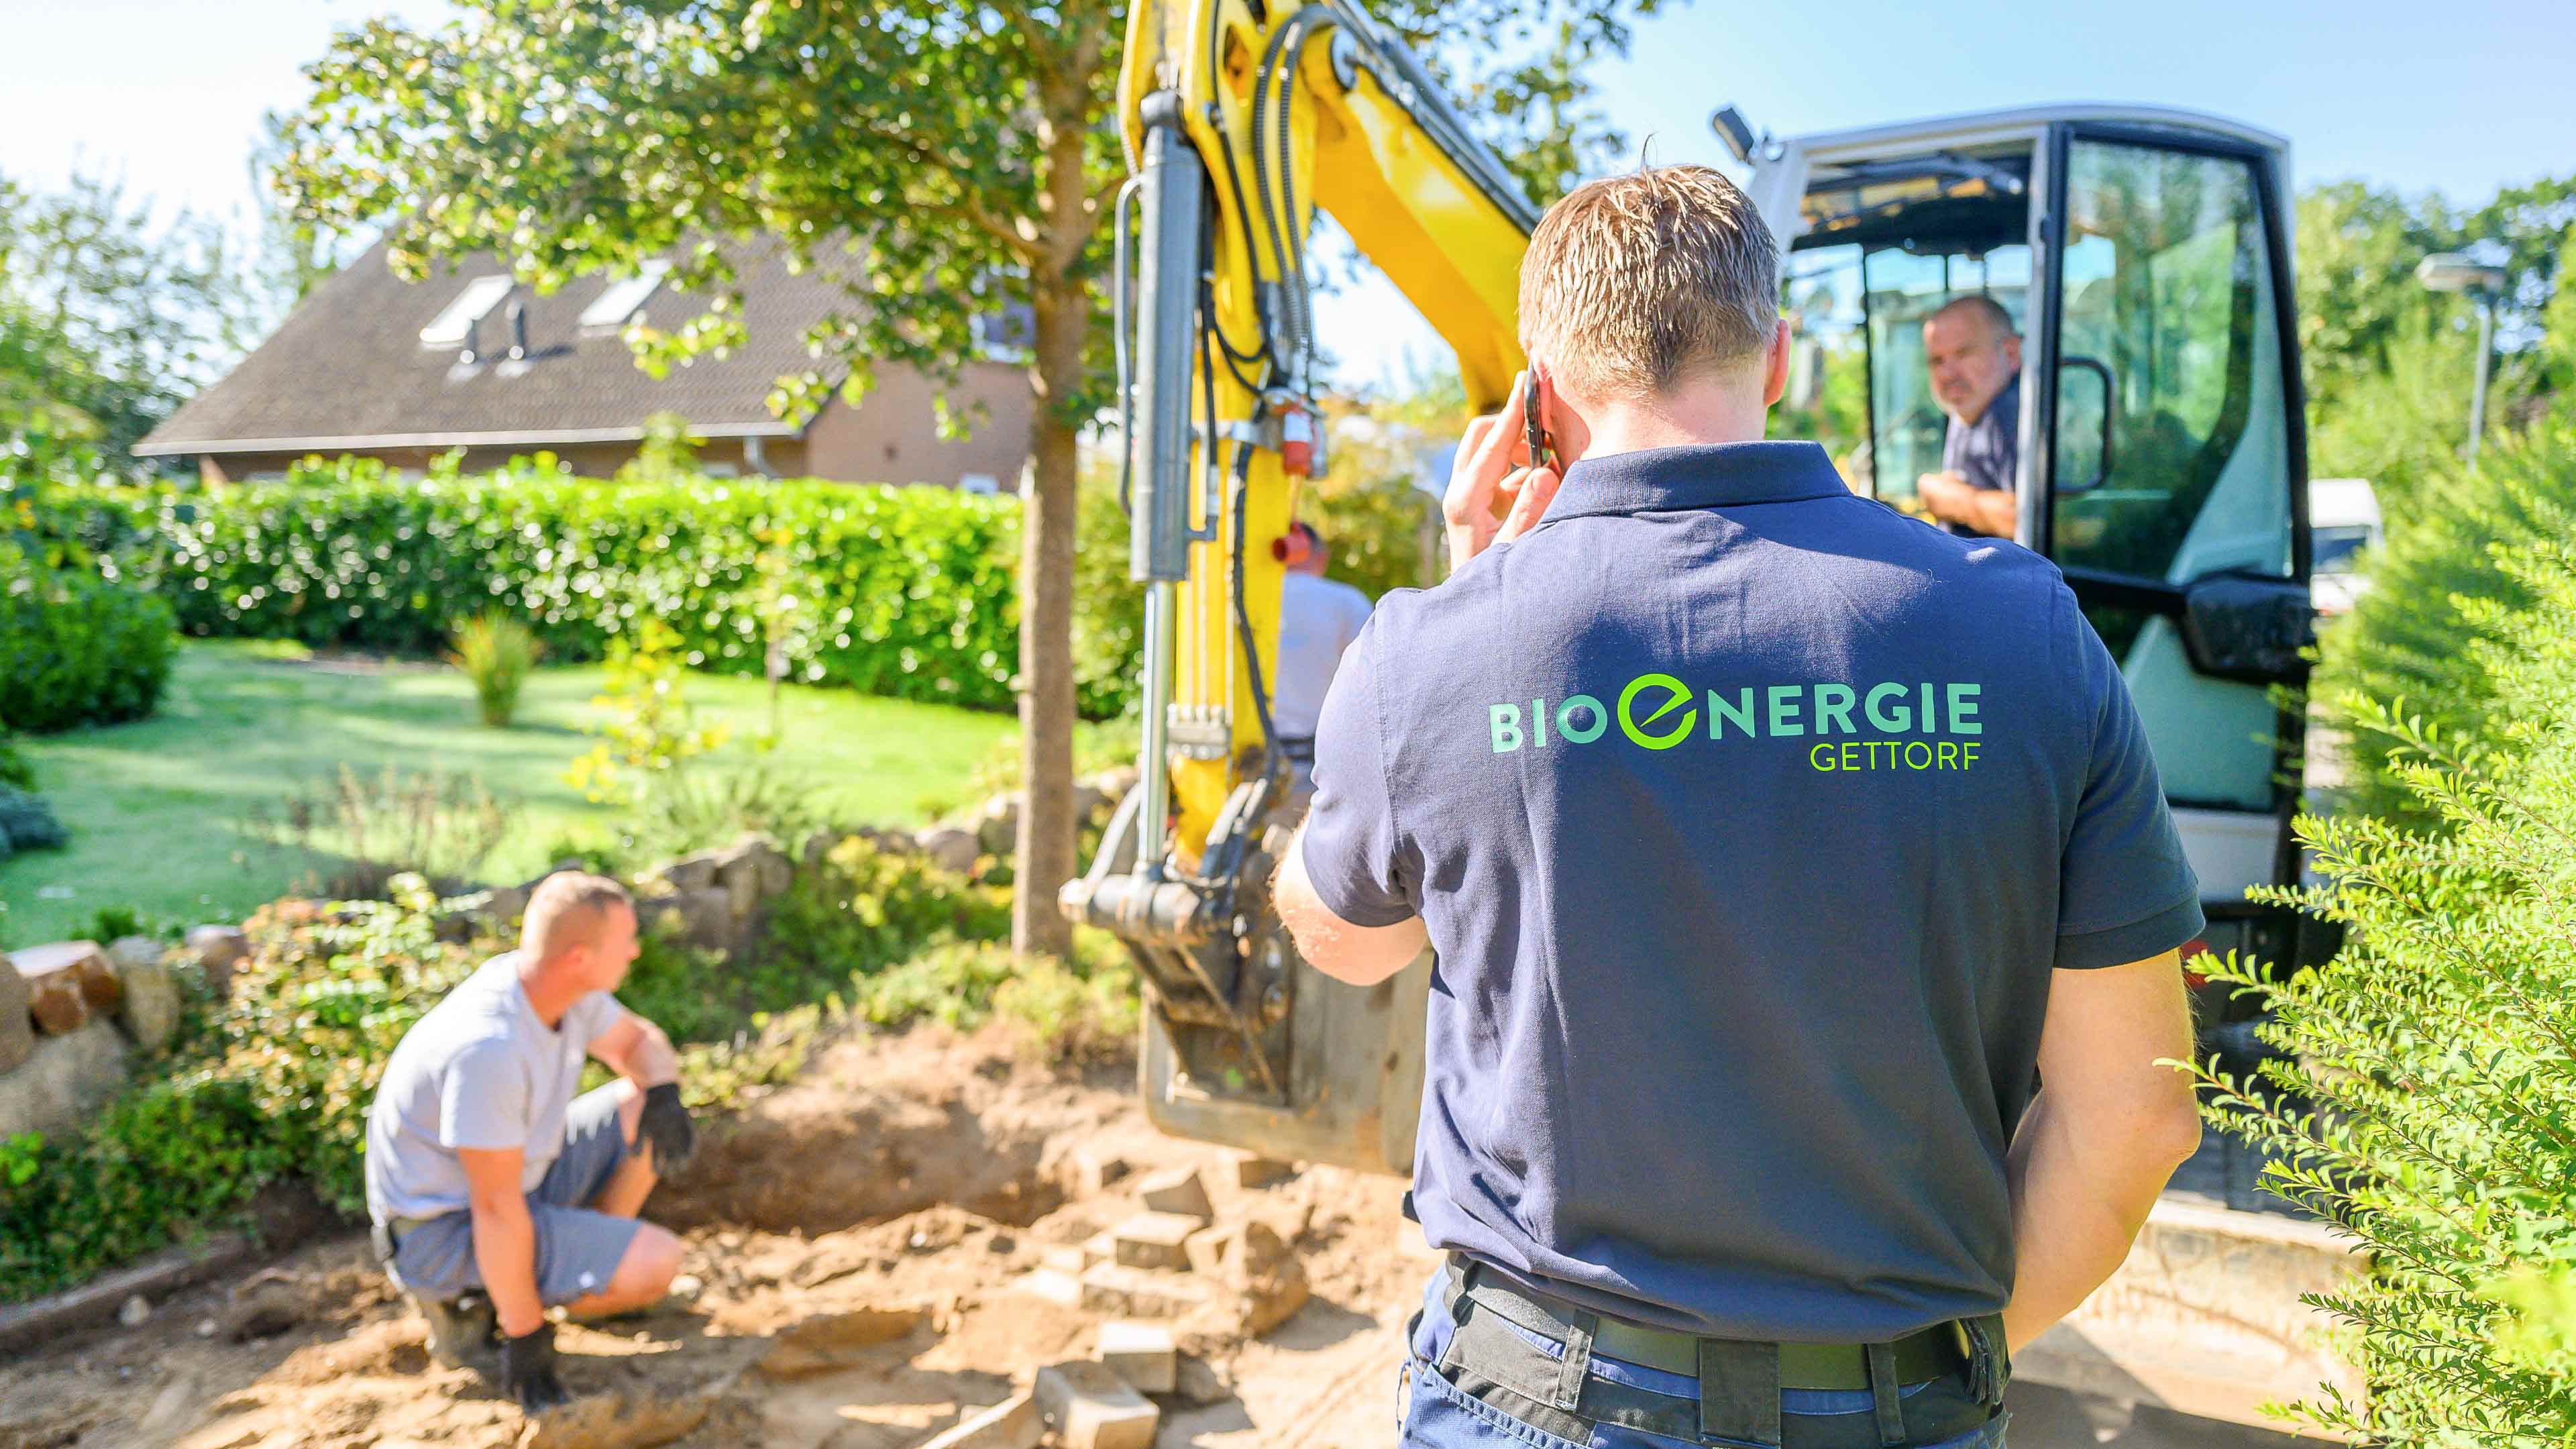 Rechteckiges Bild einer Person mit blauem Poloshirt mit Bioenergie Gettorf Logo steht vor einem kleinen Bagger und telefoniert